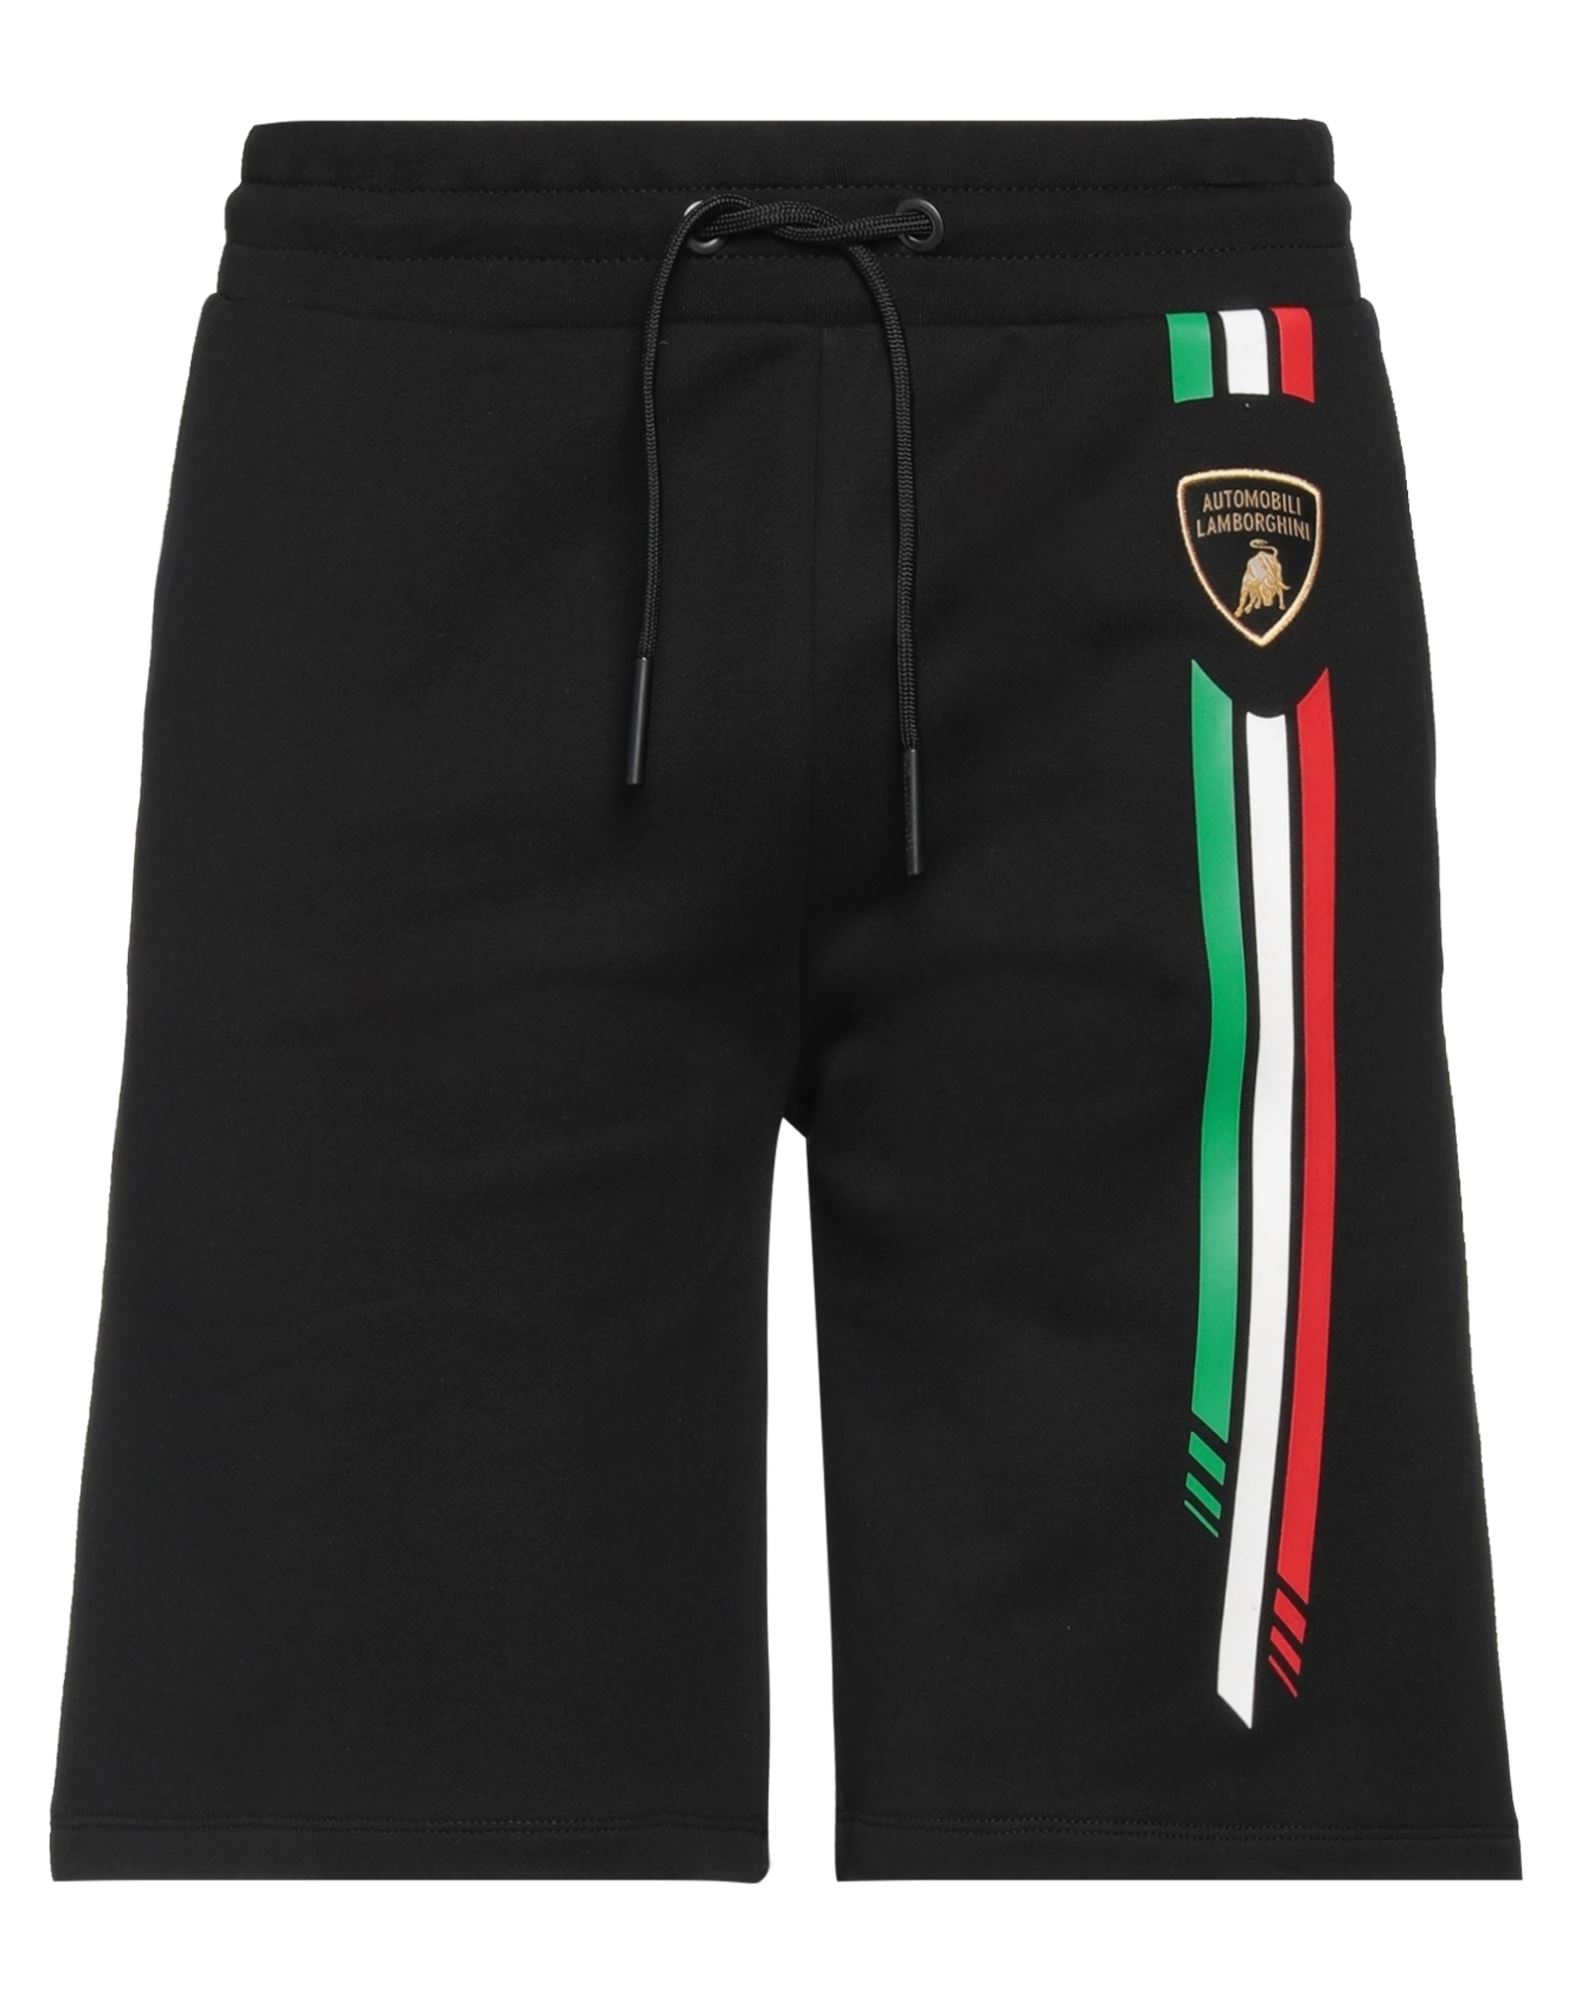 Automobili Lamborghini Man Shorts & Bermuda Shorts Black Size M Cotton